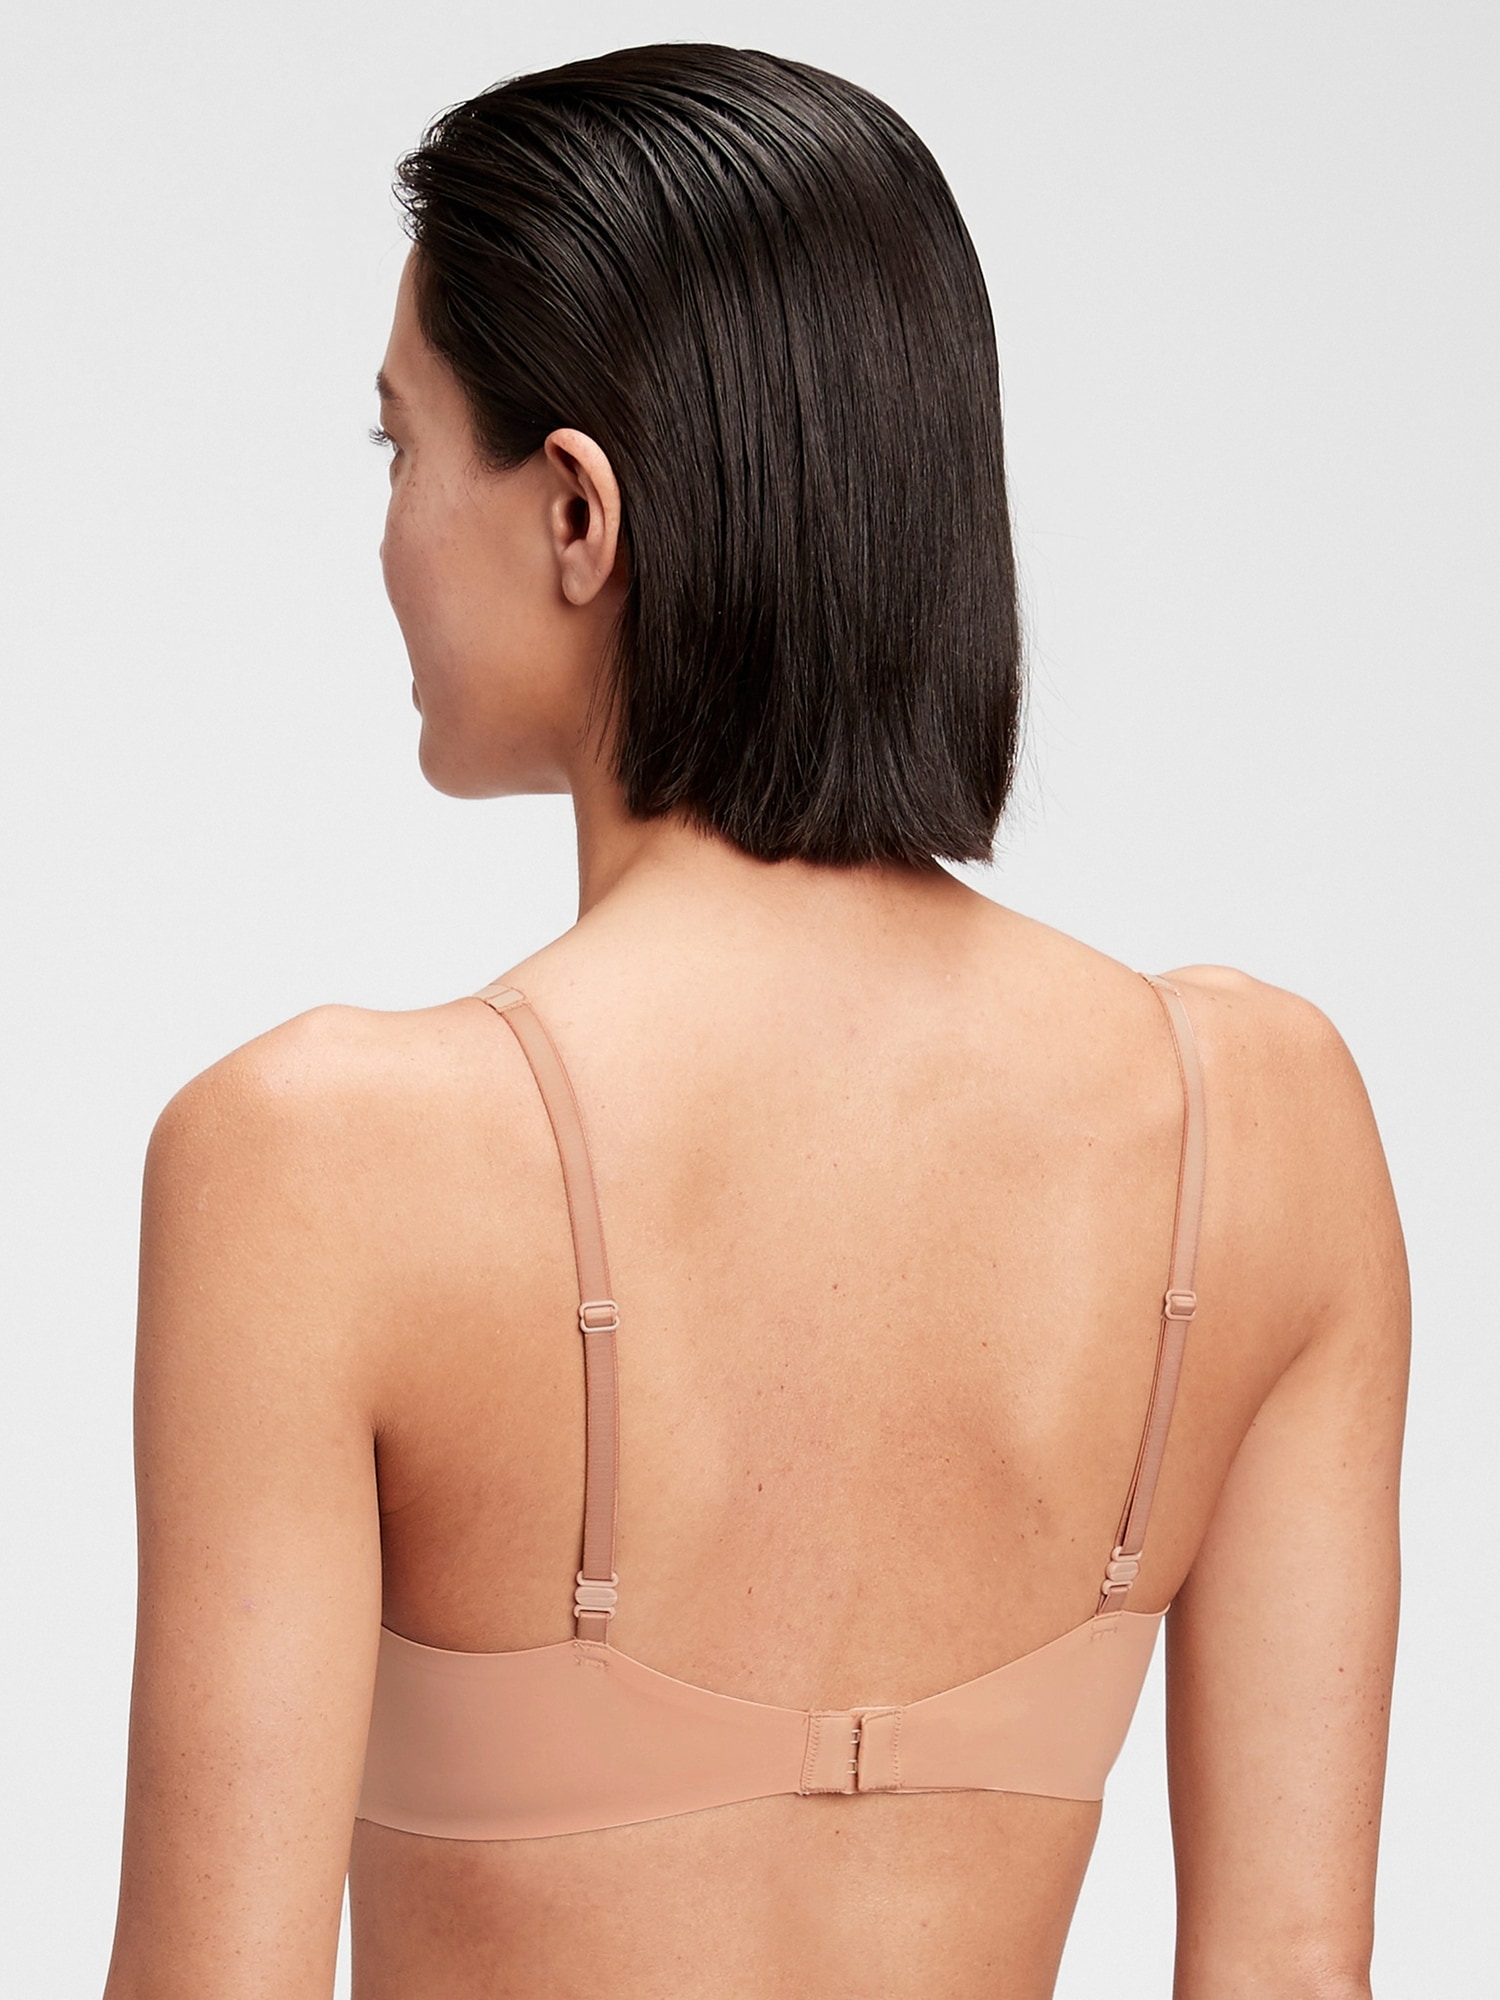 Women's Unlined Backless Bralette for Women Low Back Low Cut Bra